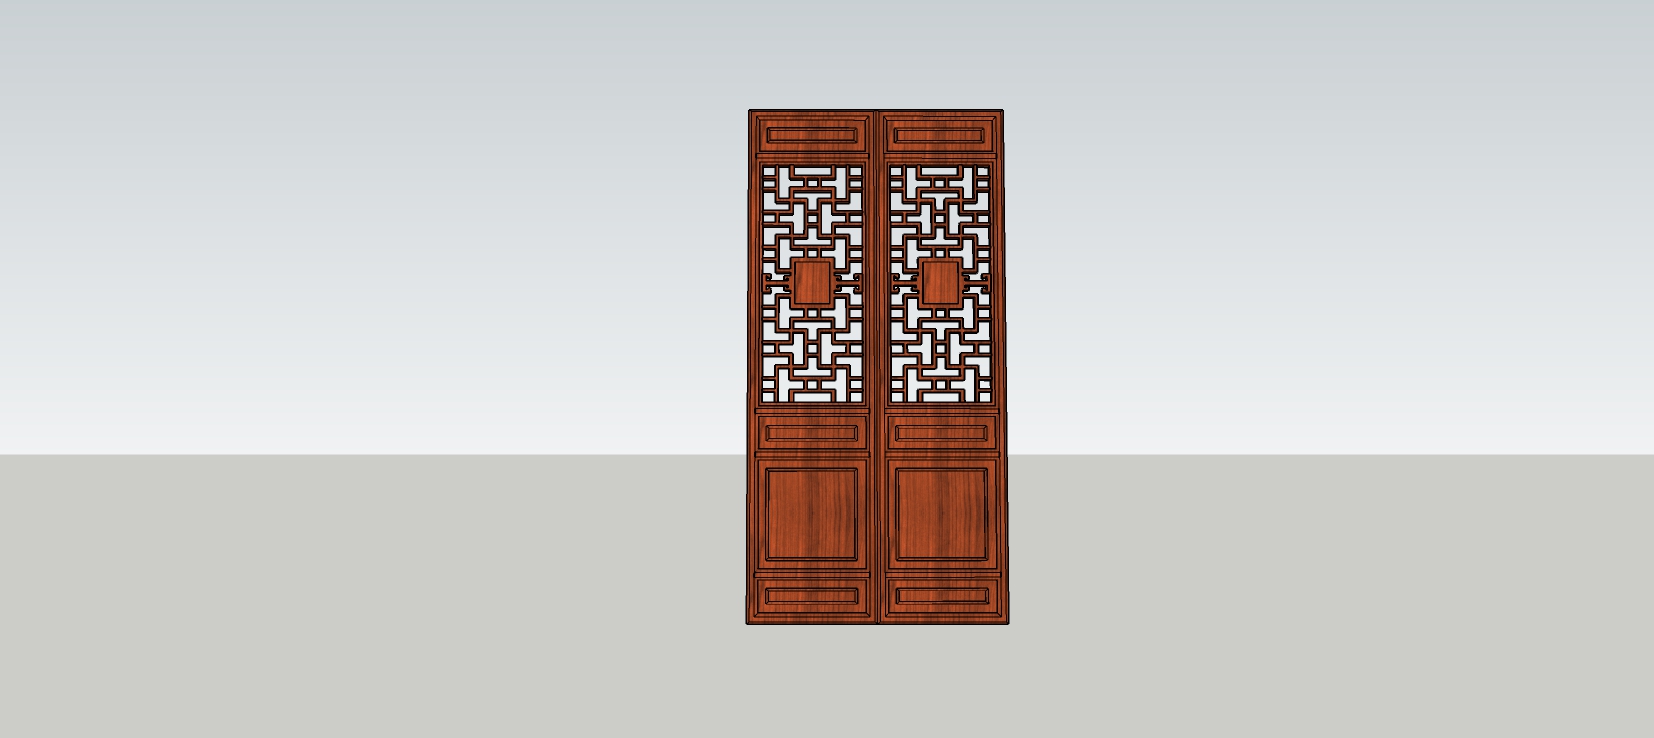 中式复古门窗    木质门窗